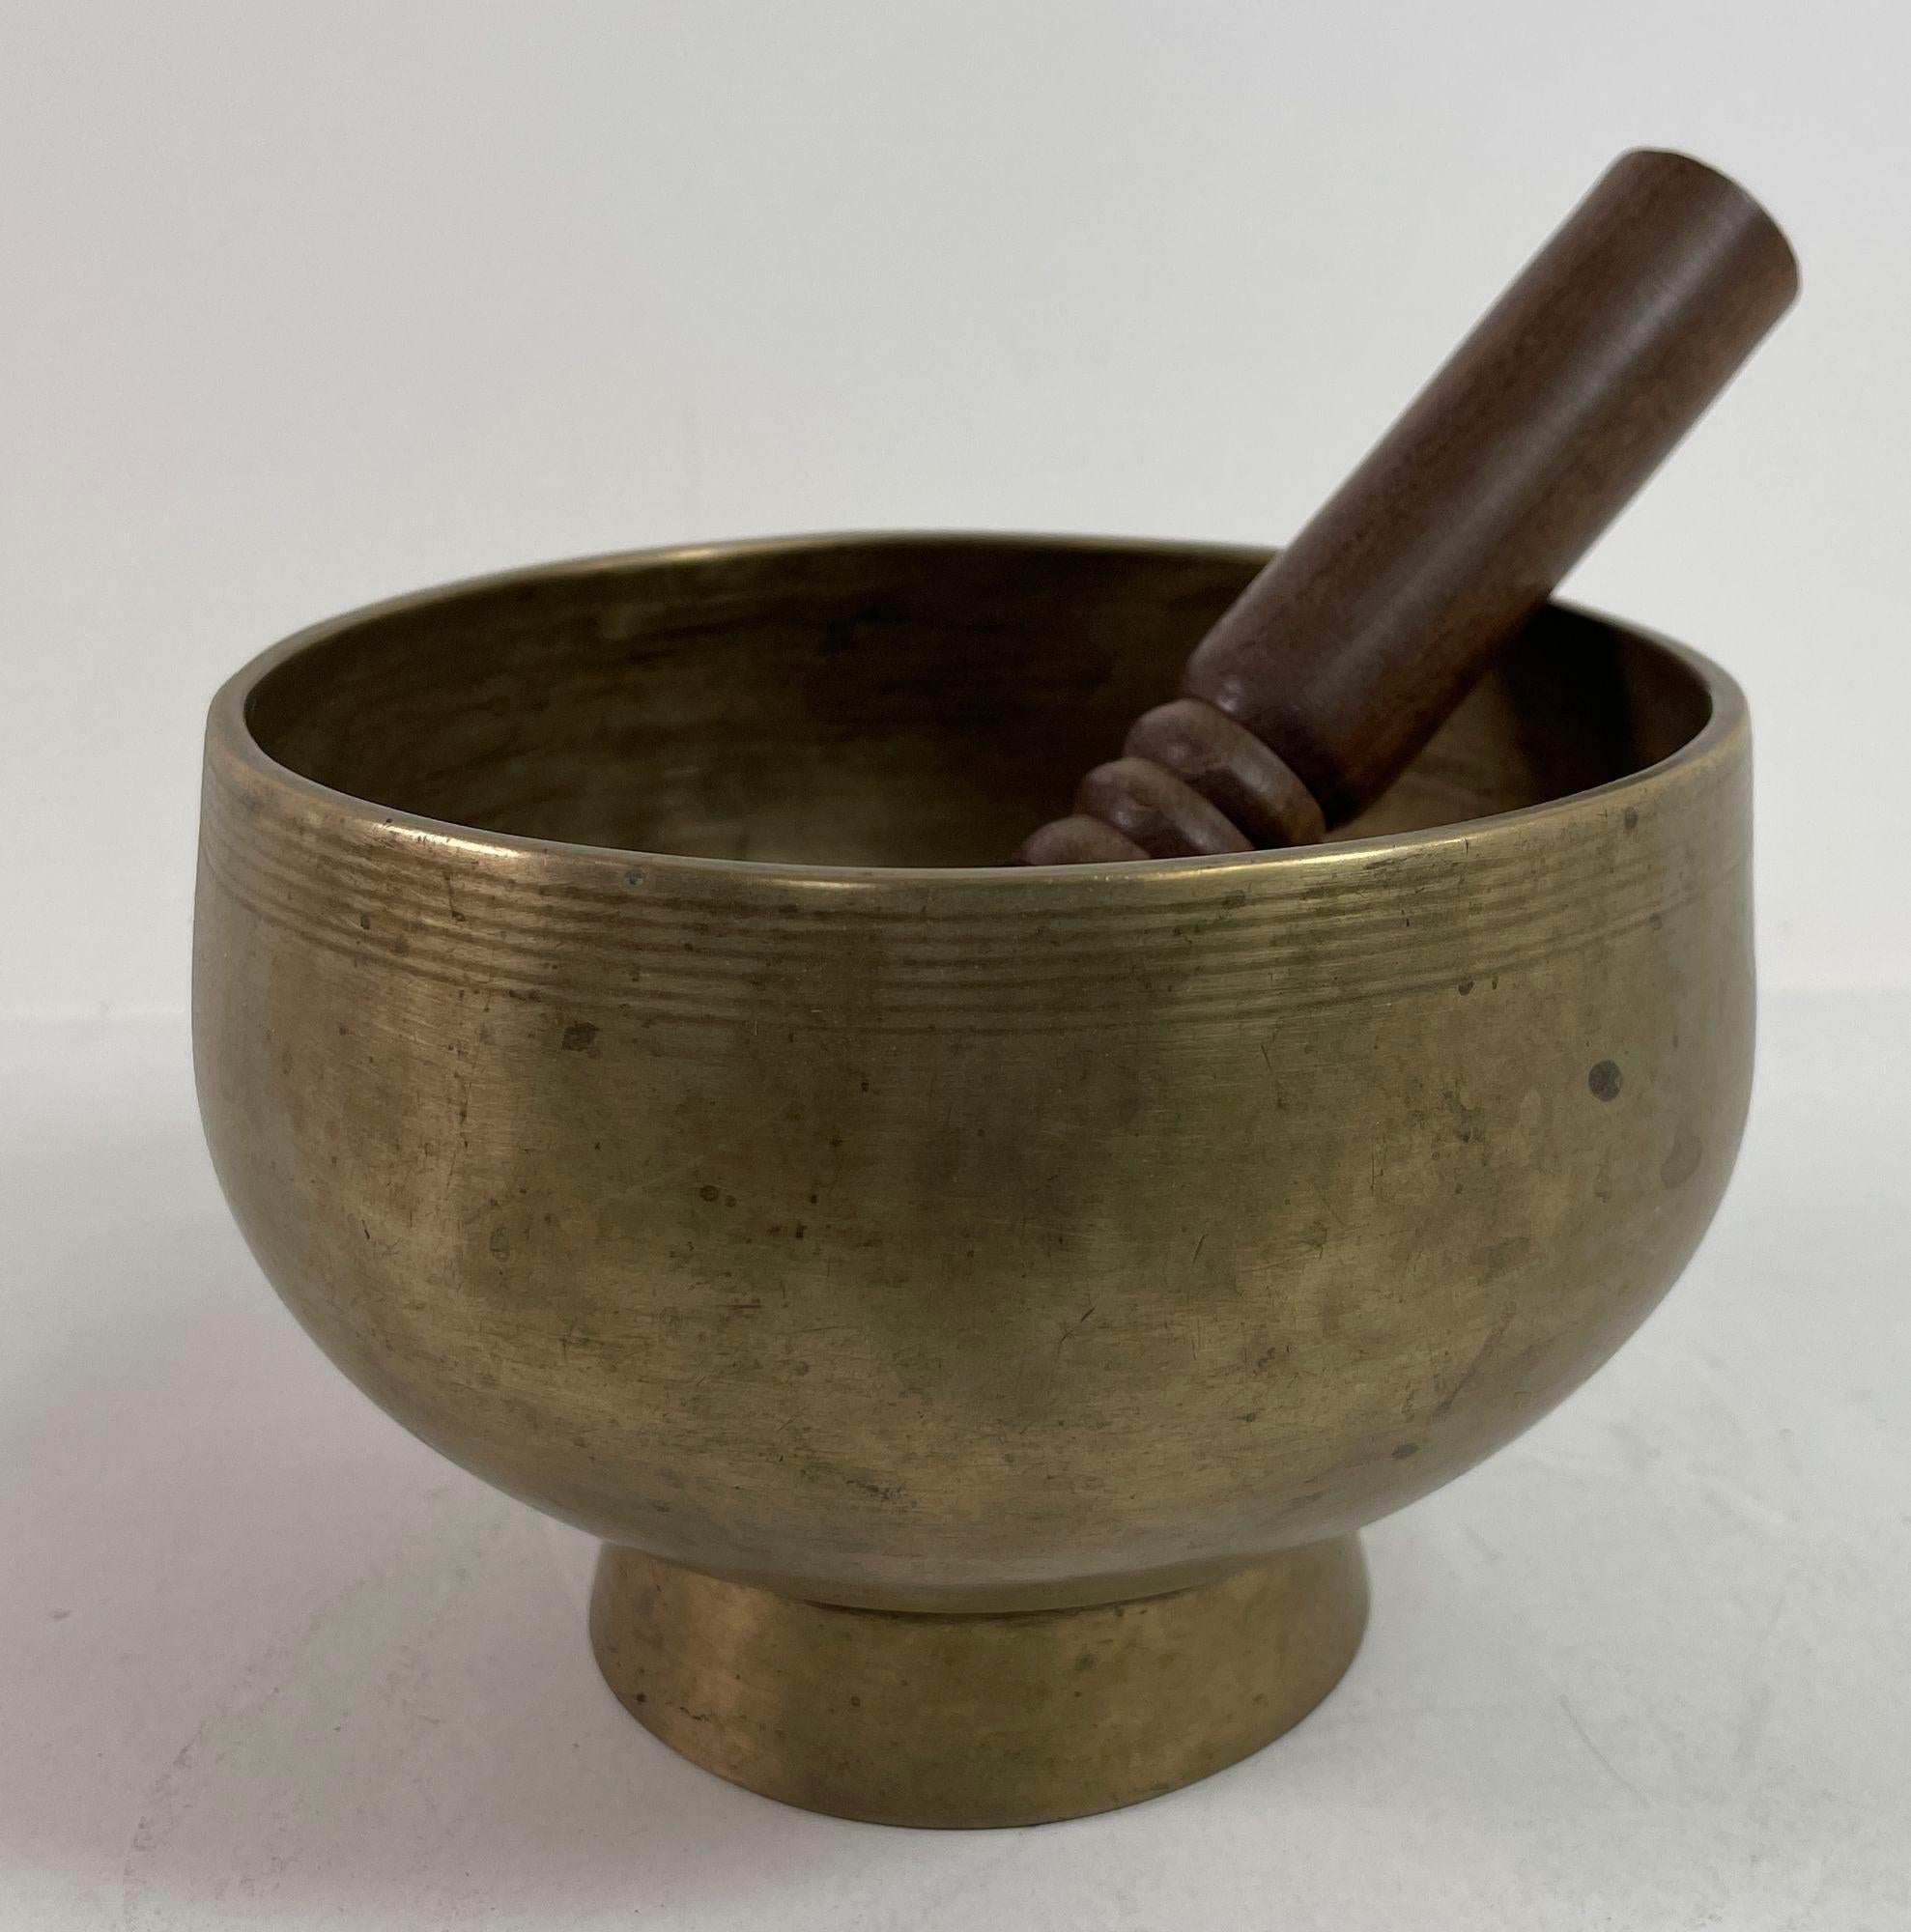 Vintage Asian Hammered Footed Bronze Singing Bowl mit Inschriften 1950s.
Asiatisches Bronzegefäß Singing Footed Bowl.
Mit gehämmertem Fischmotiv und Inschriften rund um das Gefäß.
Ein besonderes Sammlerstück.
Hergestellt aus Bronze, ein gutes,